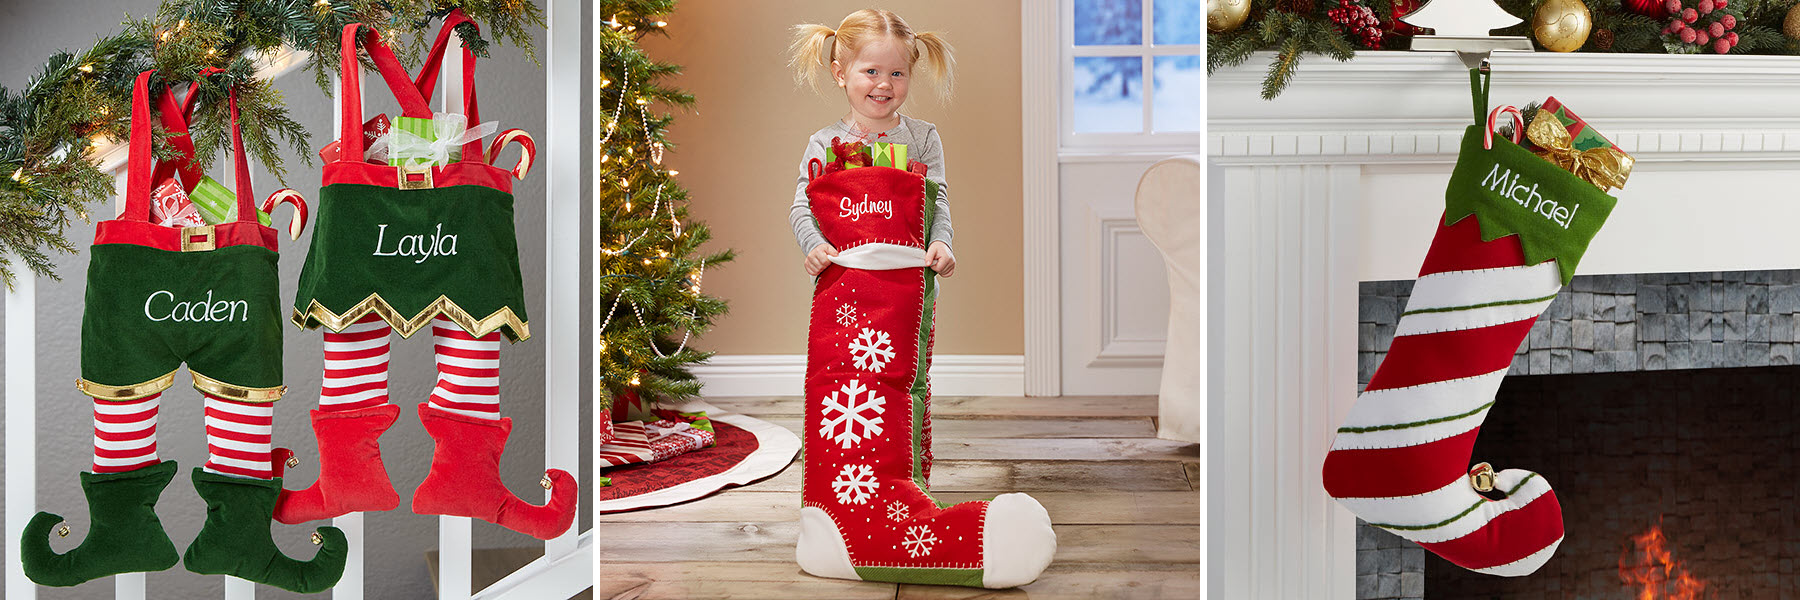 Kids Christmas Stockings